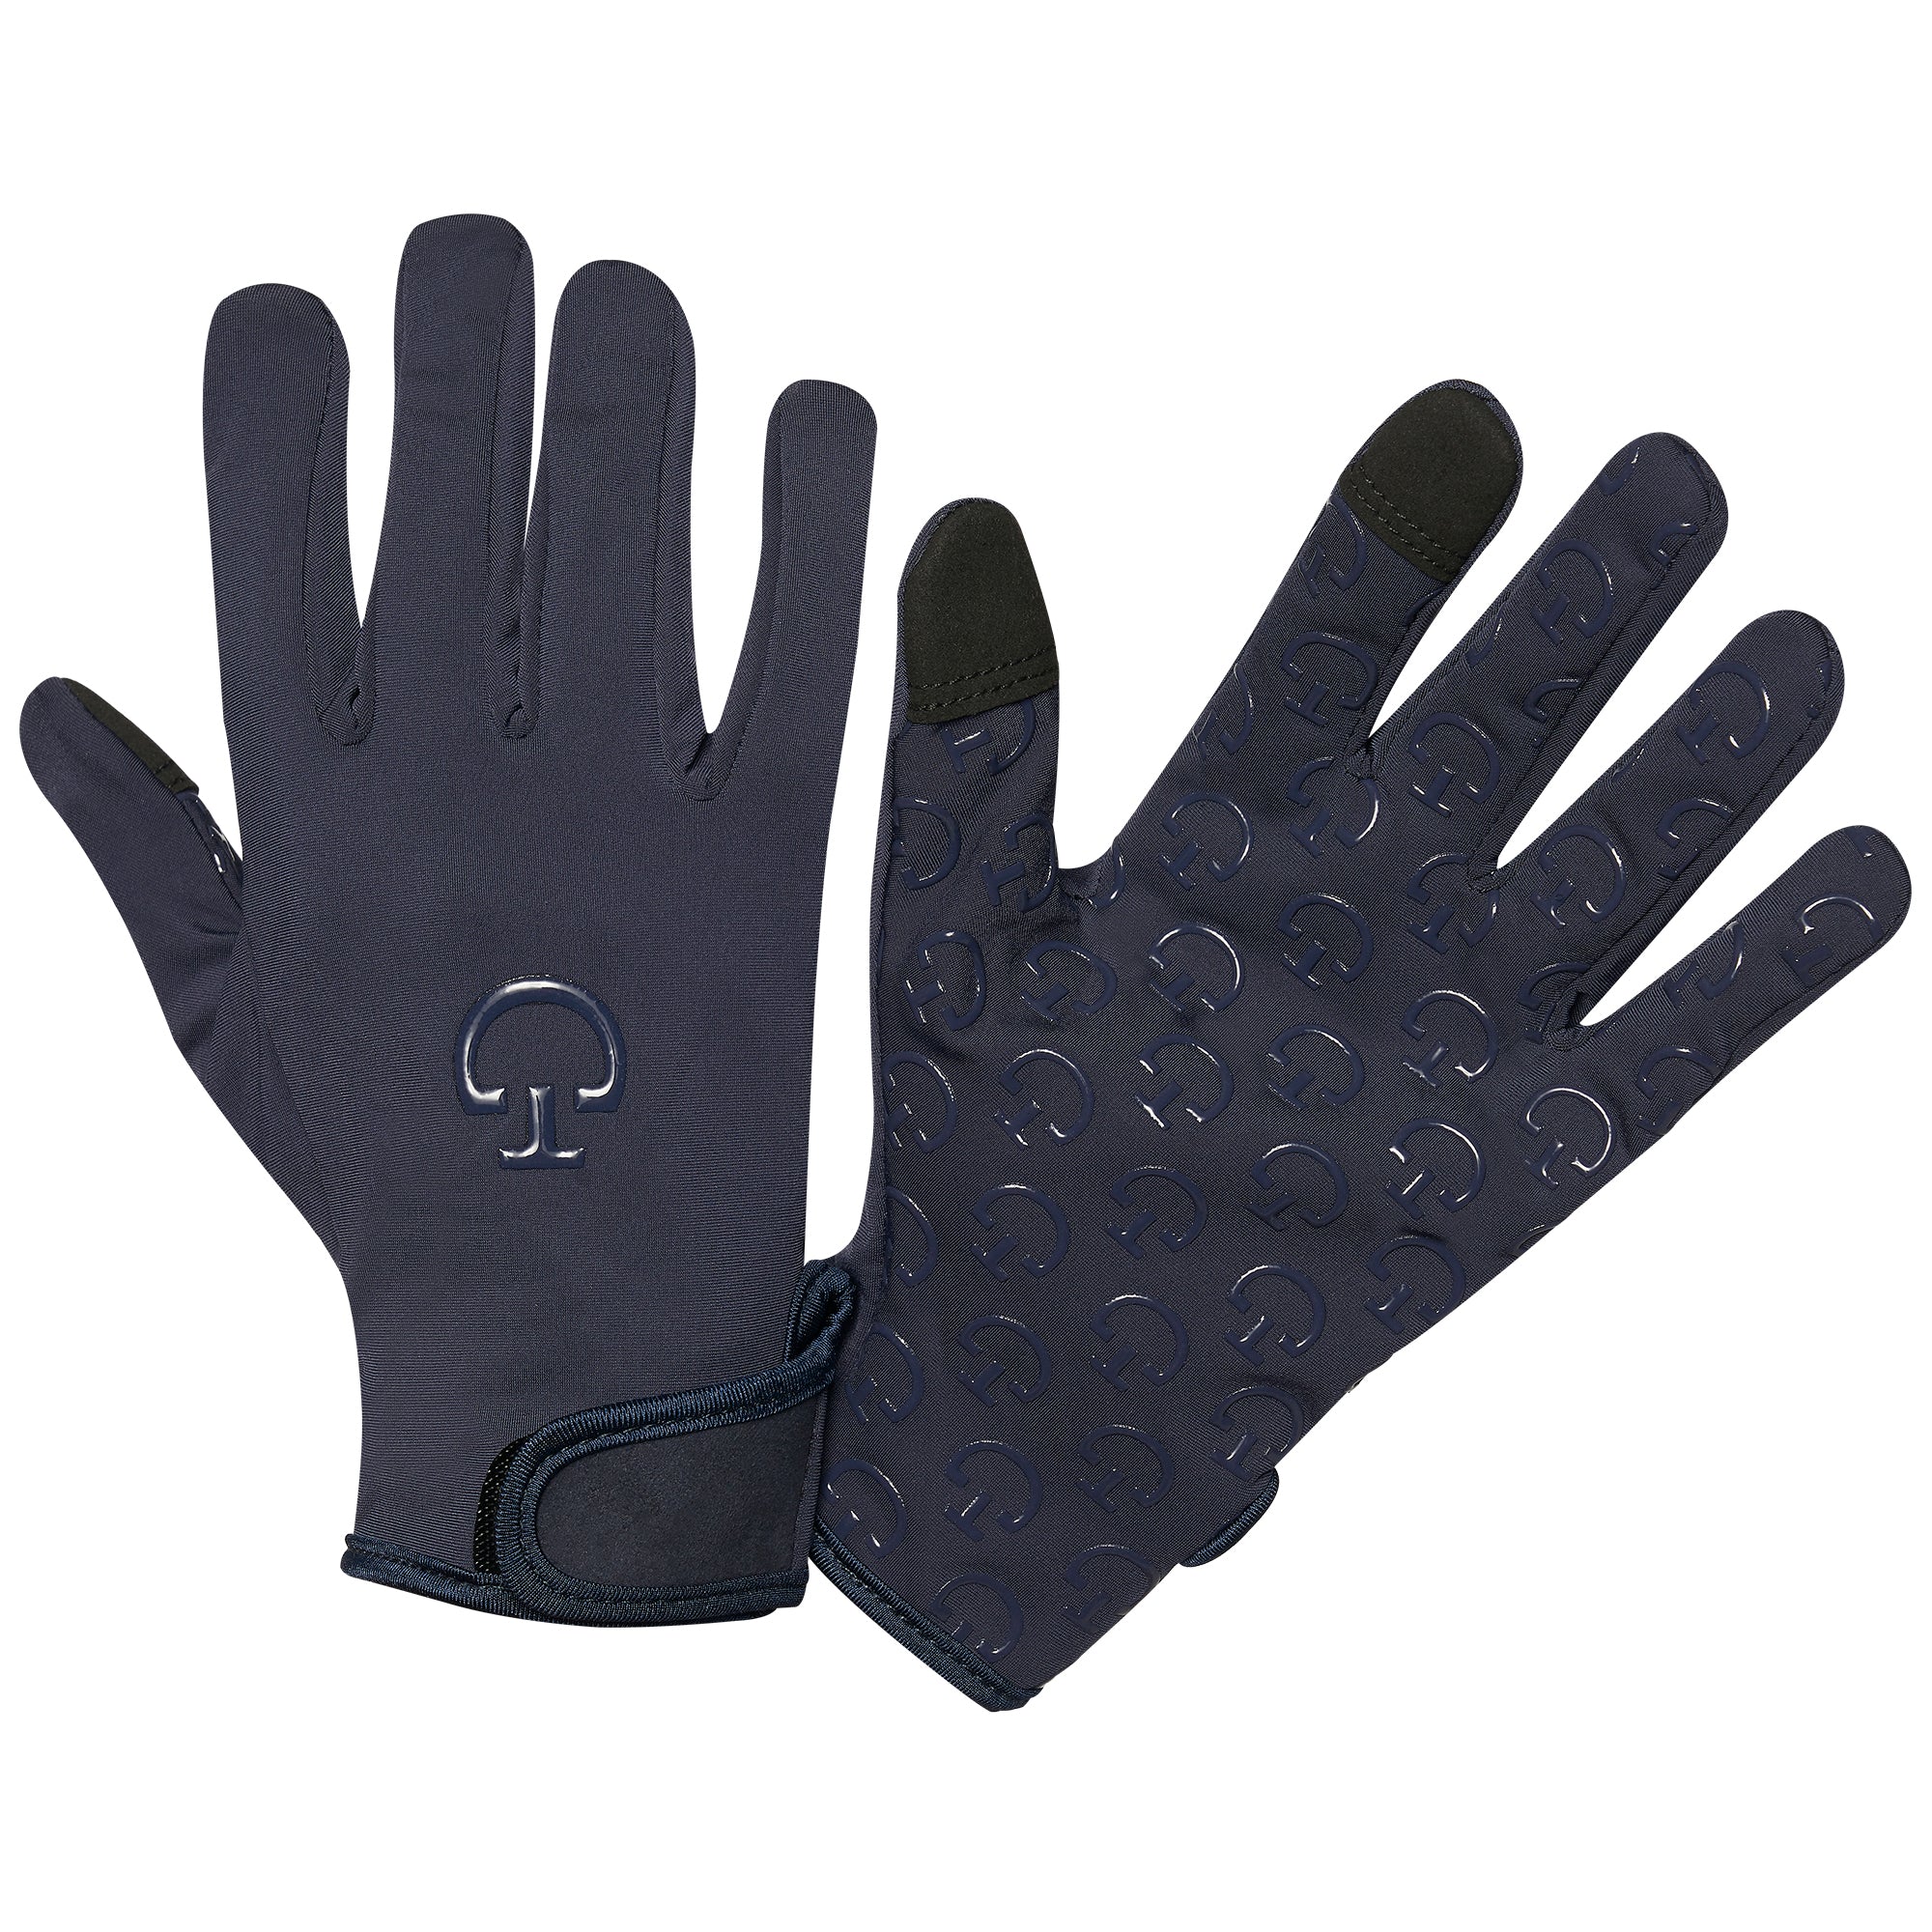 Cavalleria Toscana Winter Gloves